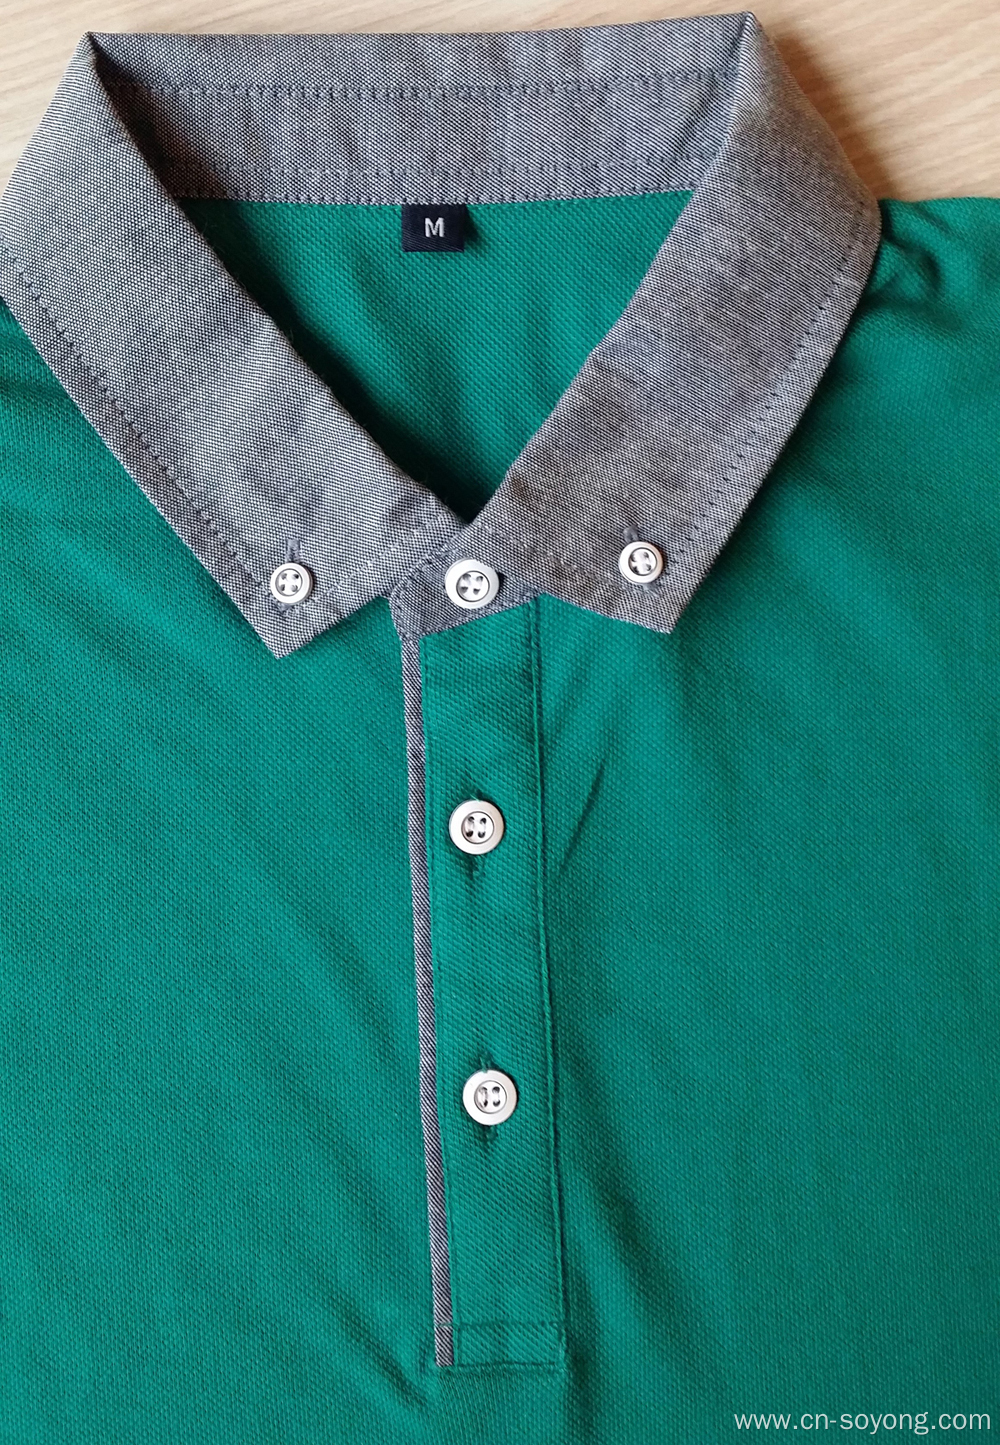 Denim Collar and Cuff Men's Fashion Polo Shirts